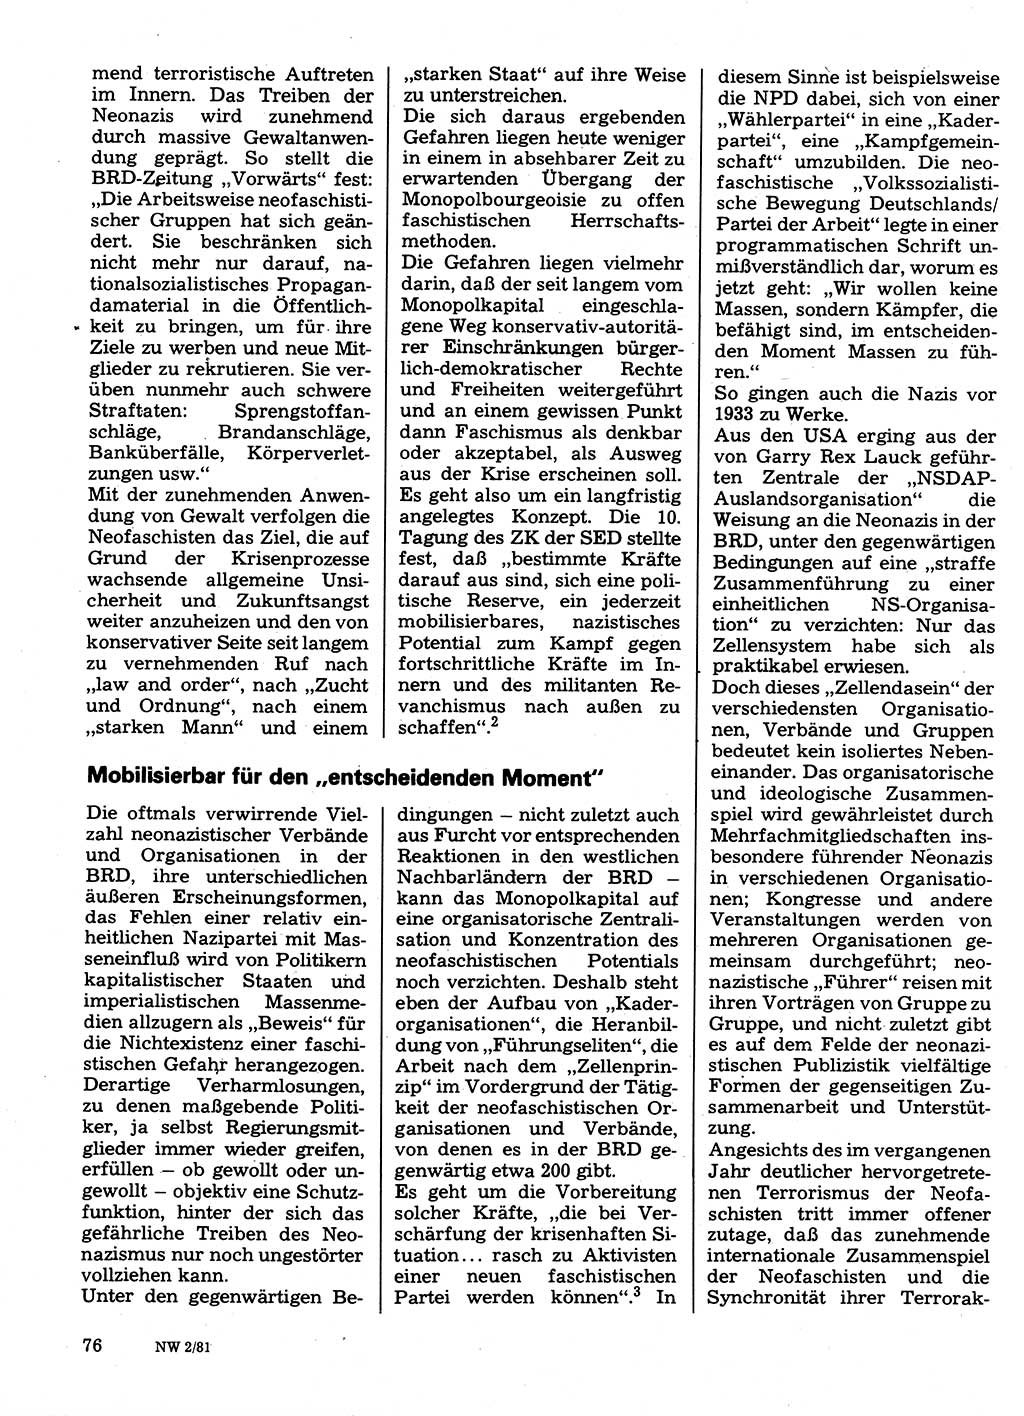 Neuer Weg (NW), Organ des Zentralkomitees (ZK) der SED (Sozialistische Einheitspartei Deutschlands) für Fragen des Parteilebens, 36. Jahrgang [Deutsche Demokratische Republik (DDR)] 1981, Seite 76 (NW ZK SED DDR 1981, S. 76)